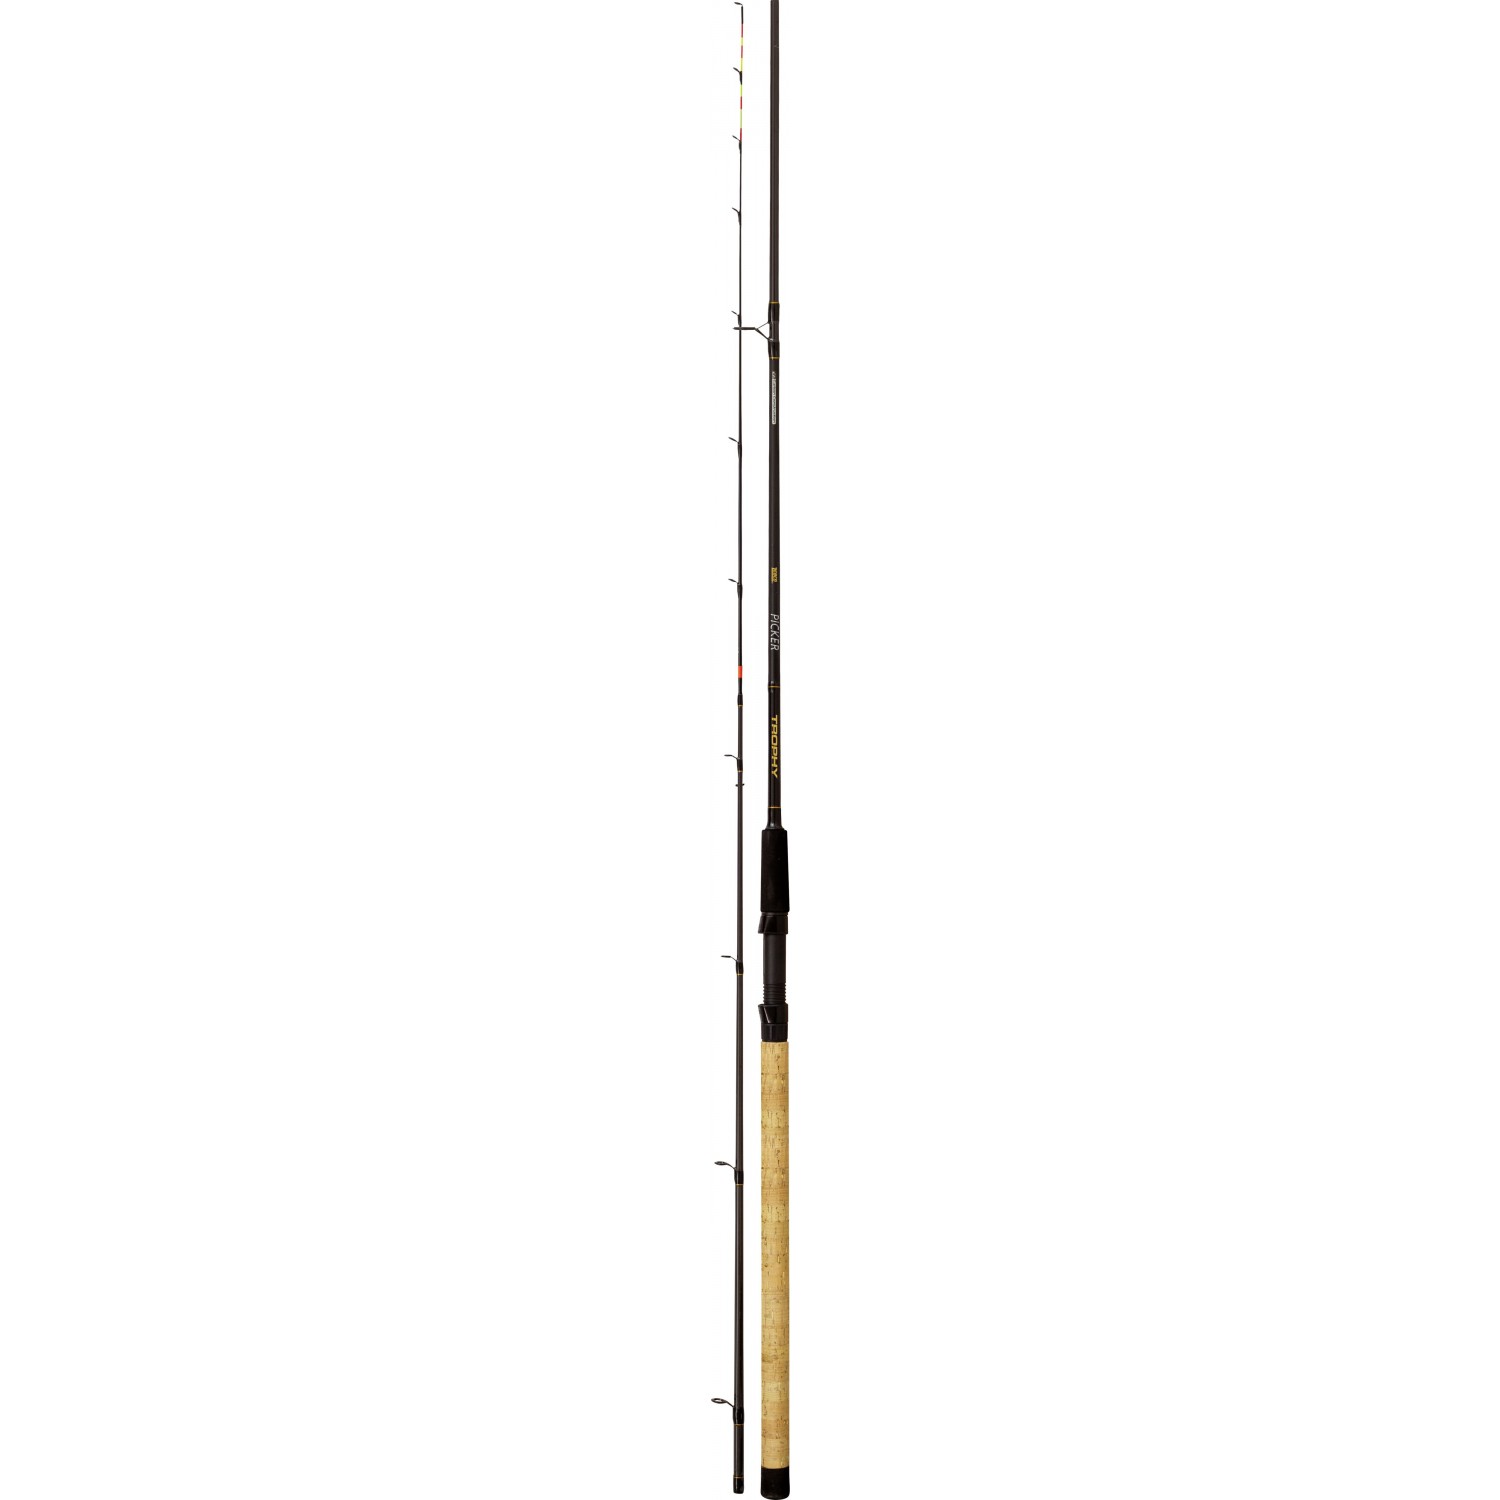 Zebco Trophy Picker 2,55m 60g Novi Trophy štapovi nude senzaciju omjera cijene i učinka s tankim, punim karbonskim blankovima koji pružaju brzu akciju koja se obično nalazi samo u znatno višim cjenovnim segmentima. Picker je savršen za lakši ribolov na blizinu, sa idealnom daljinom zabacivanja od 20-40 m.  Karakteristike: Duzina-2.55 m, Transportna duzina - 133 cm, 2 rezervna vrha (1 i 2 oz), CW-60 gr. CIjena: 84 BAM